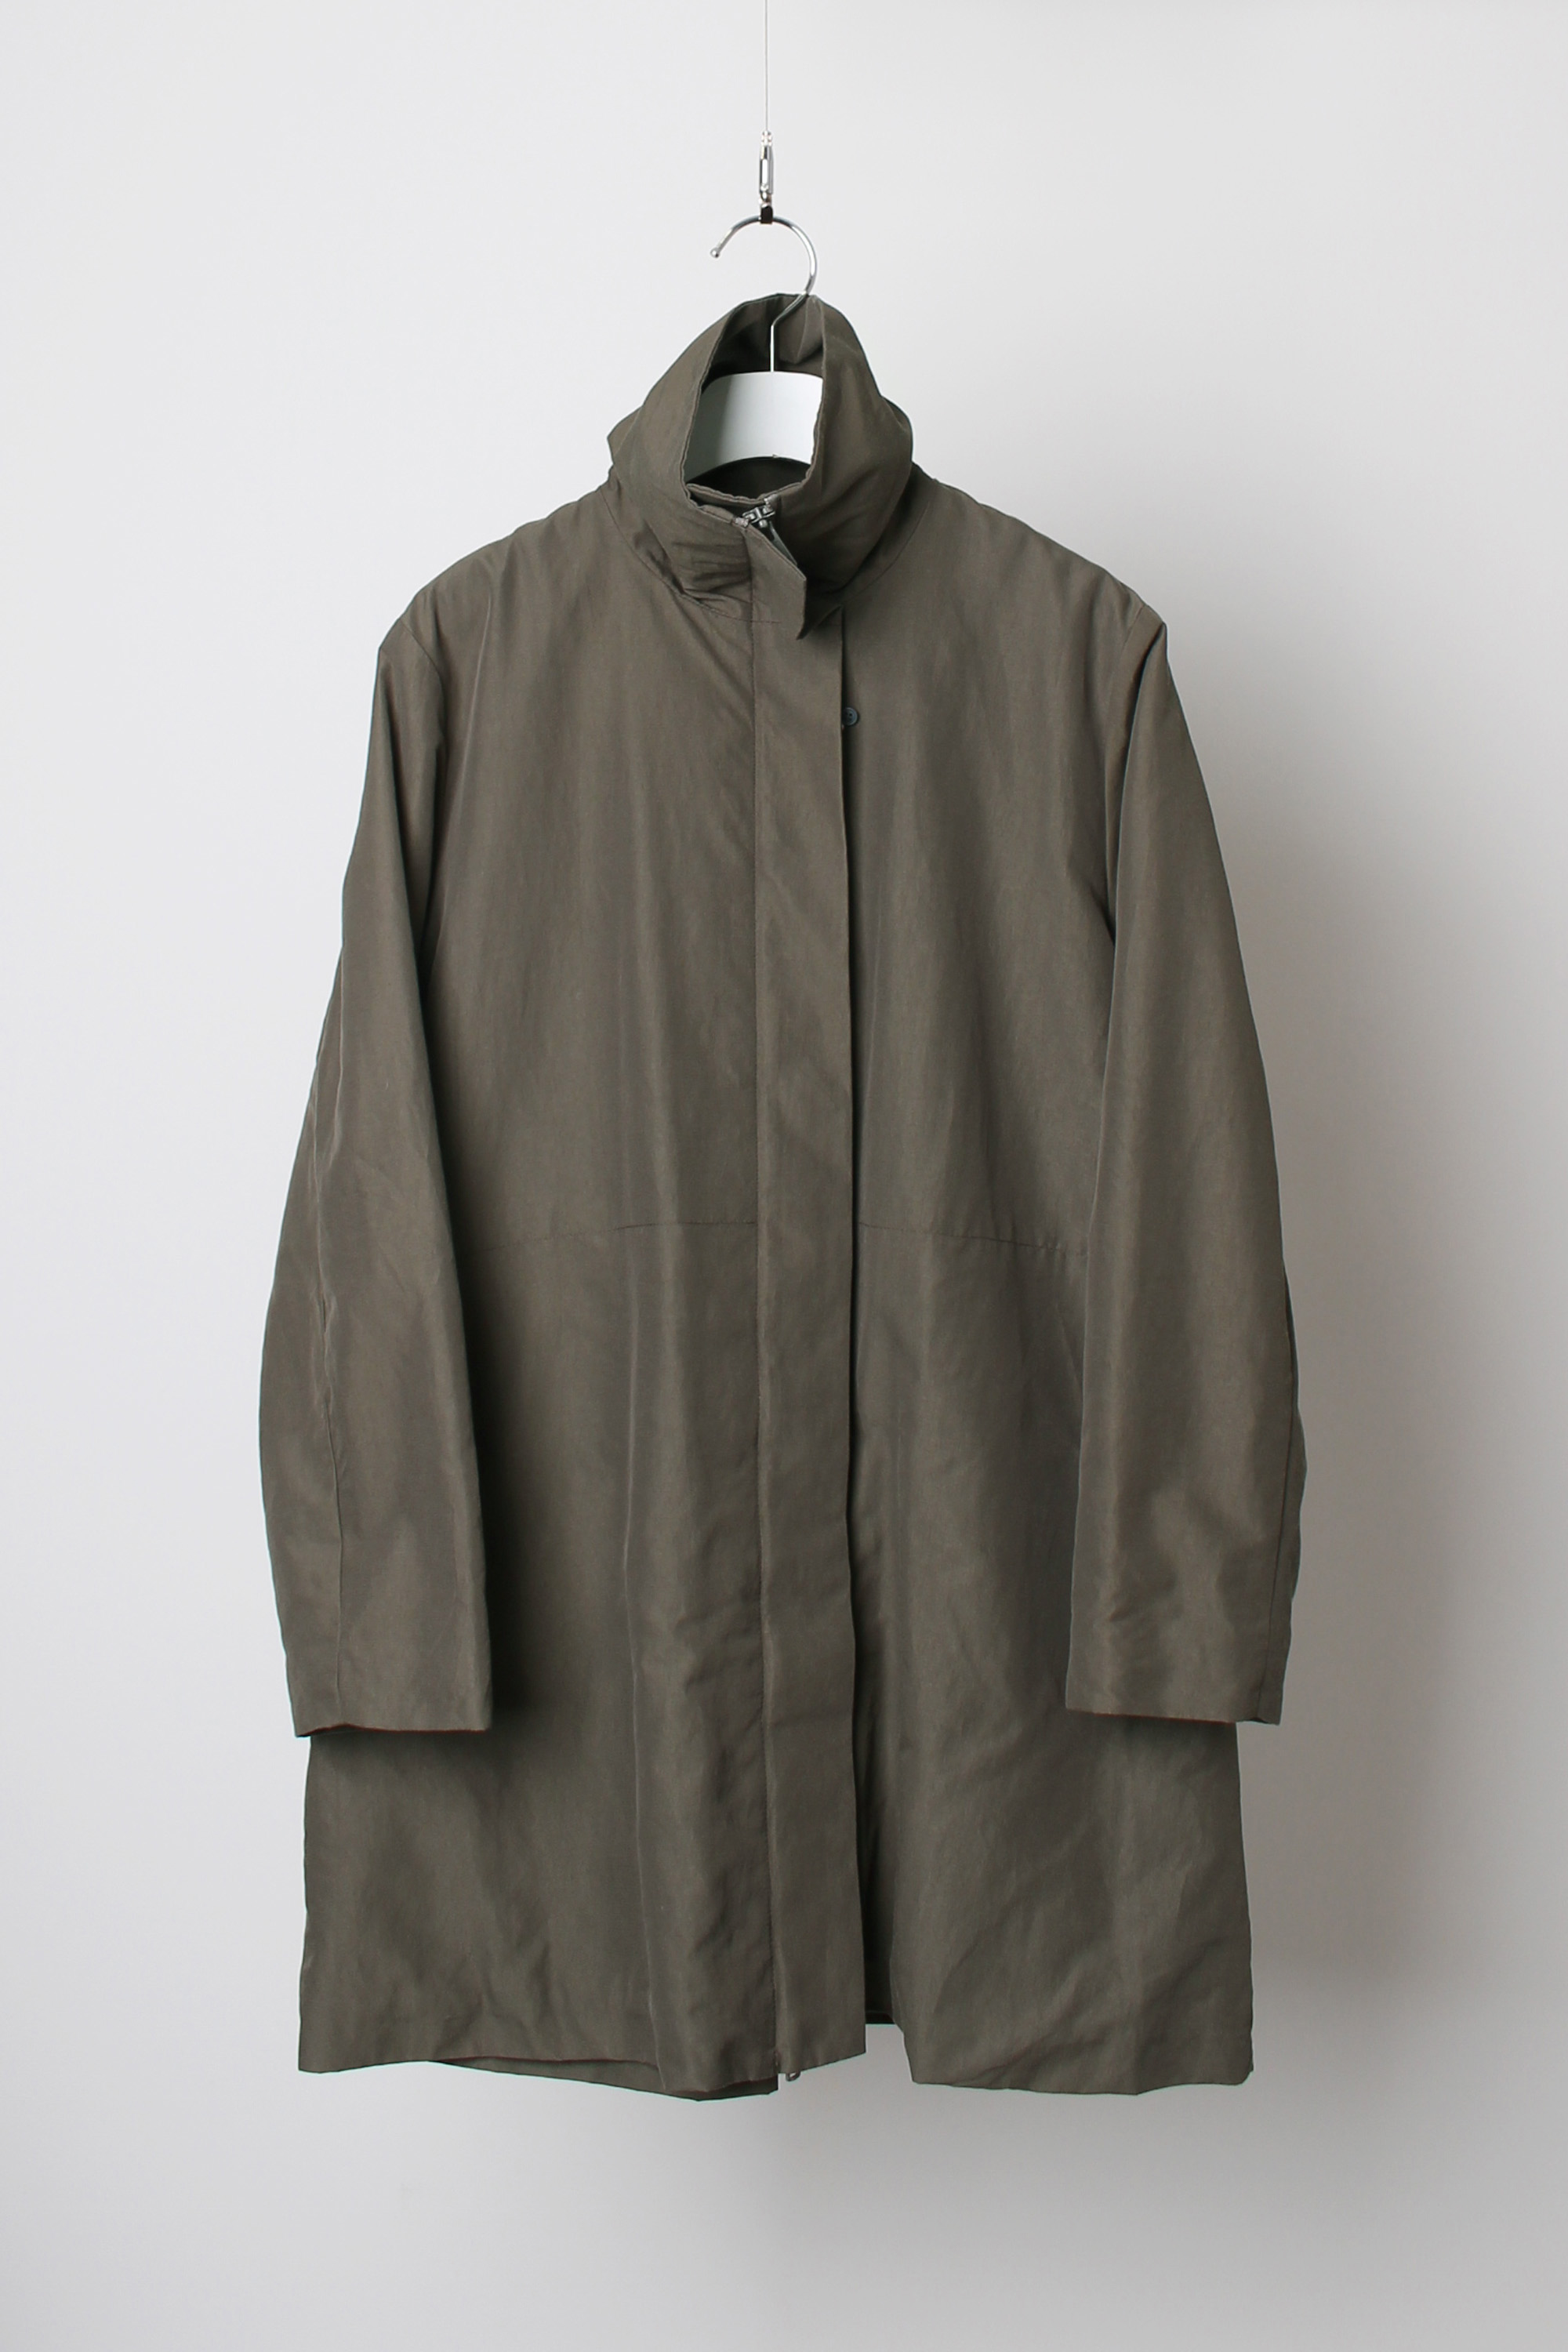 I Wish by Yohji Yamamoto coat